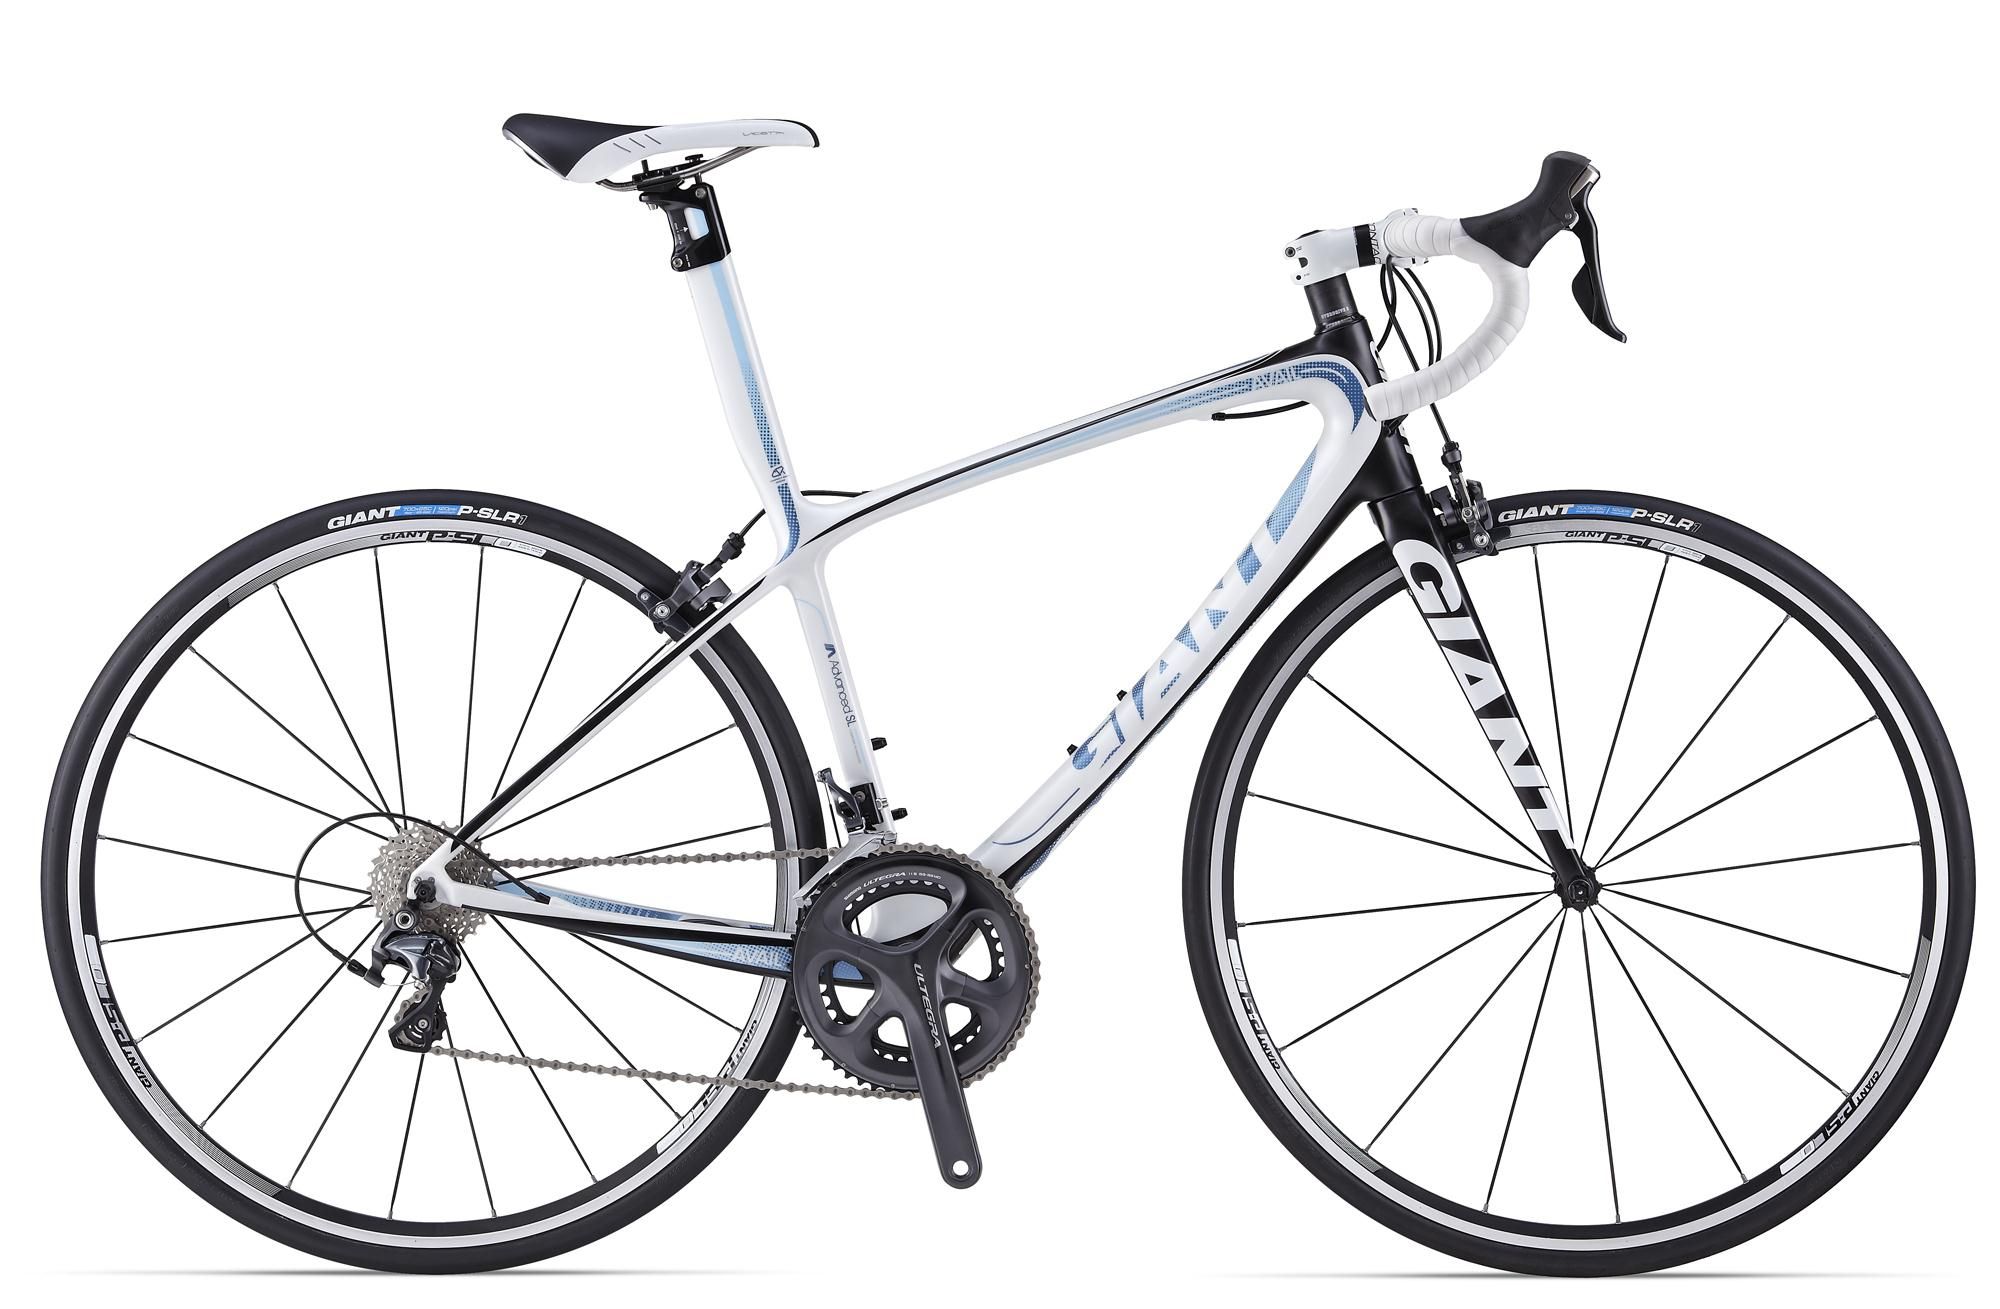  Отзывы о Шоссейном велосипеде Giant Avail Advanced SL 1 2014